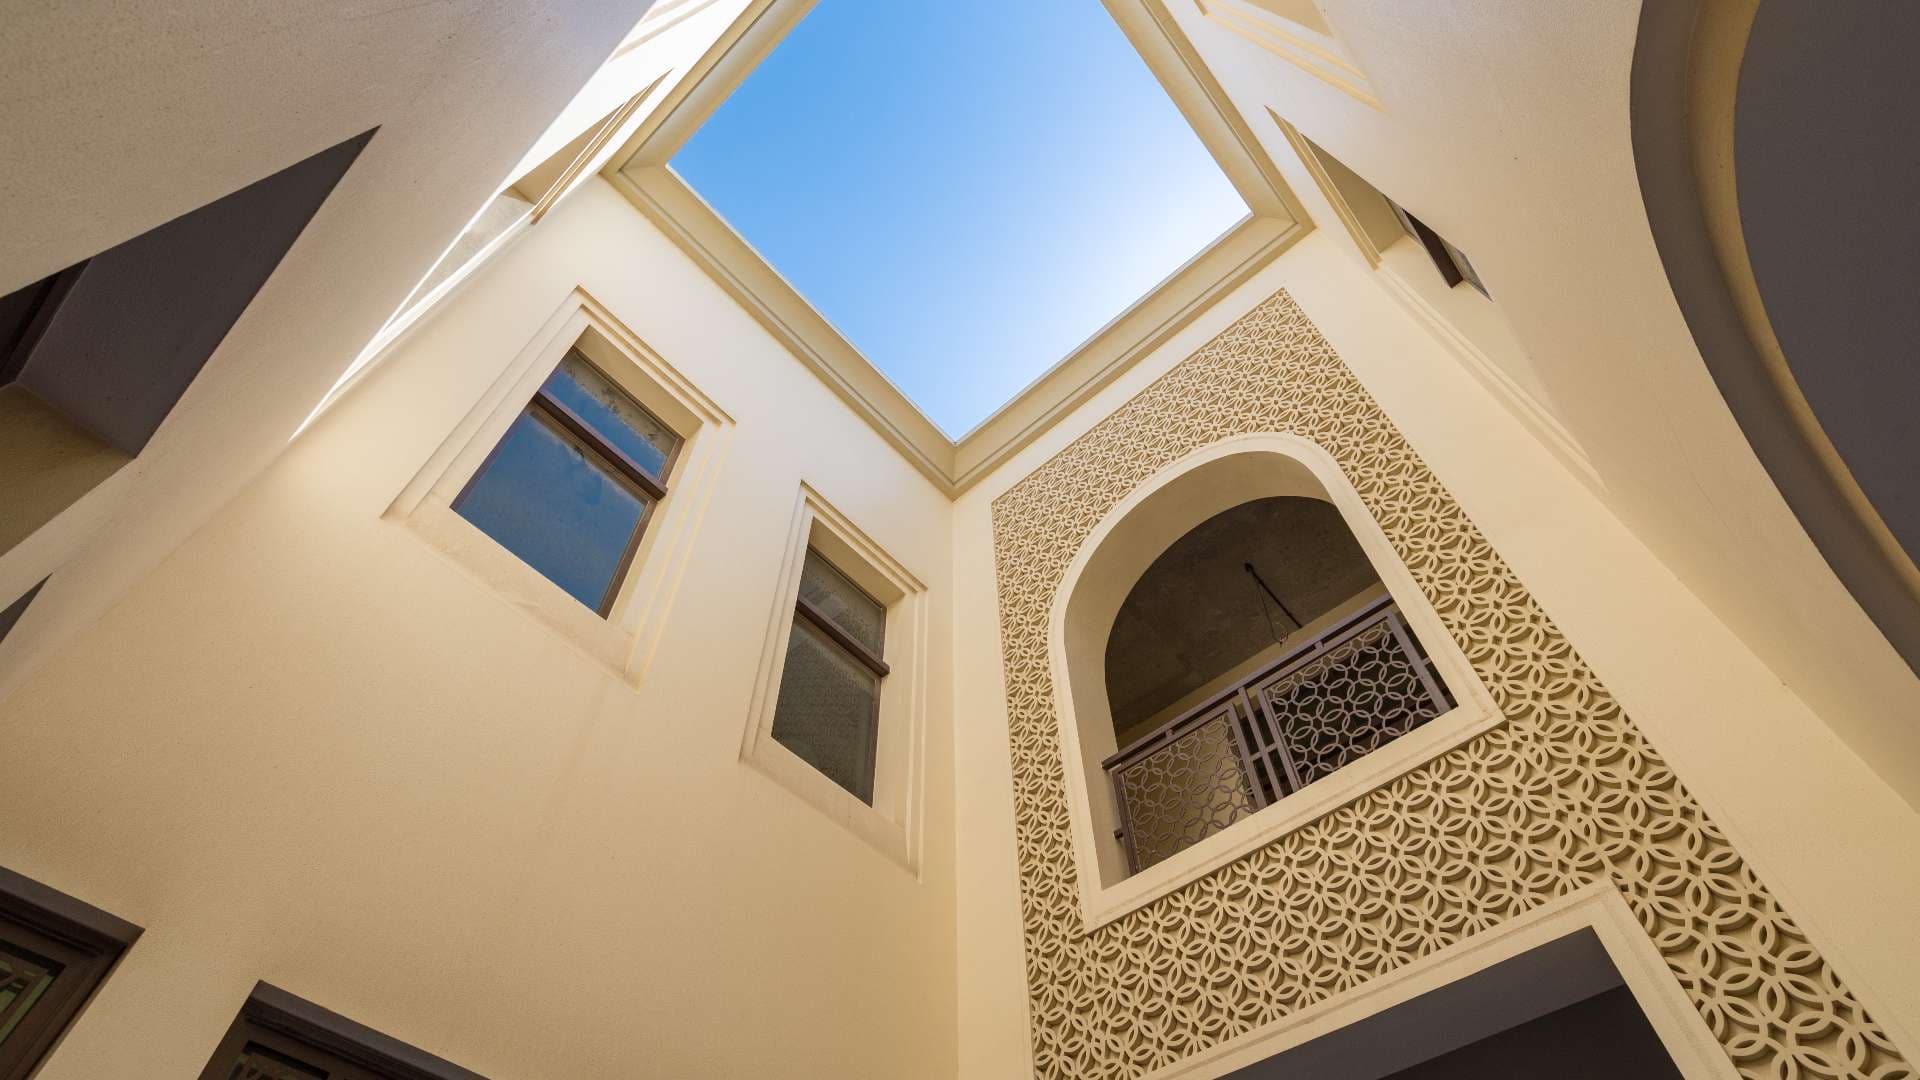  Bedroom Villa For Sale Dubai Hills View Lp08475 1e18d0739072c000.jpg